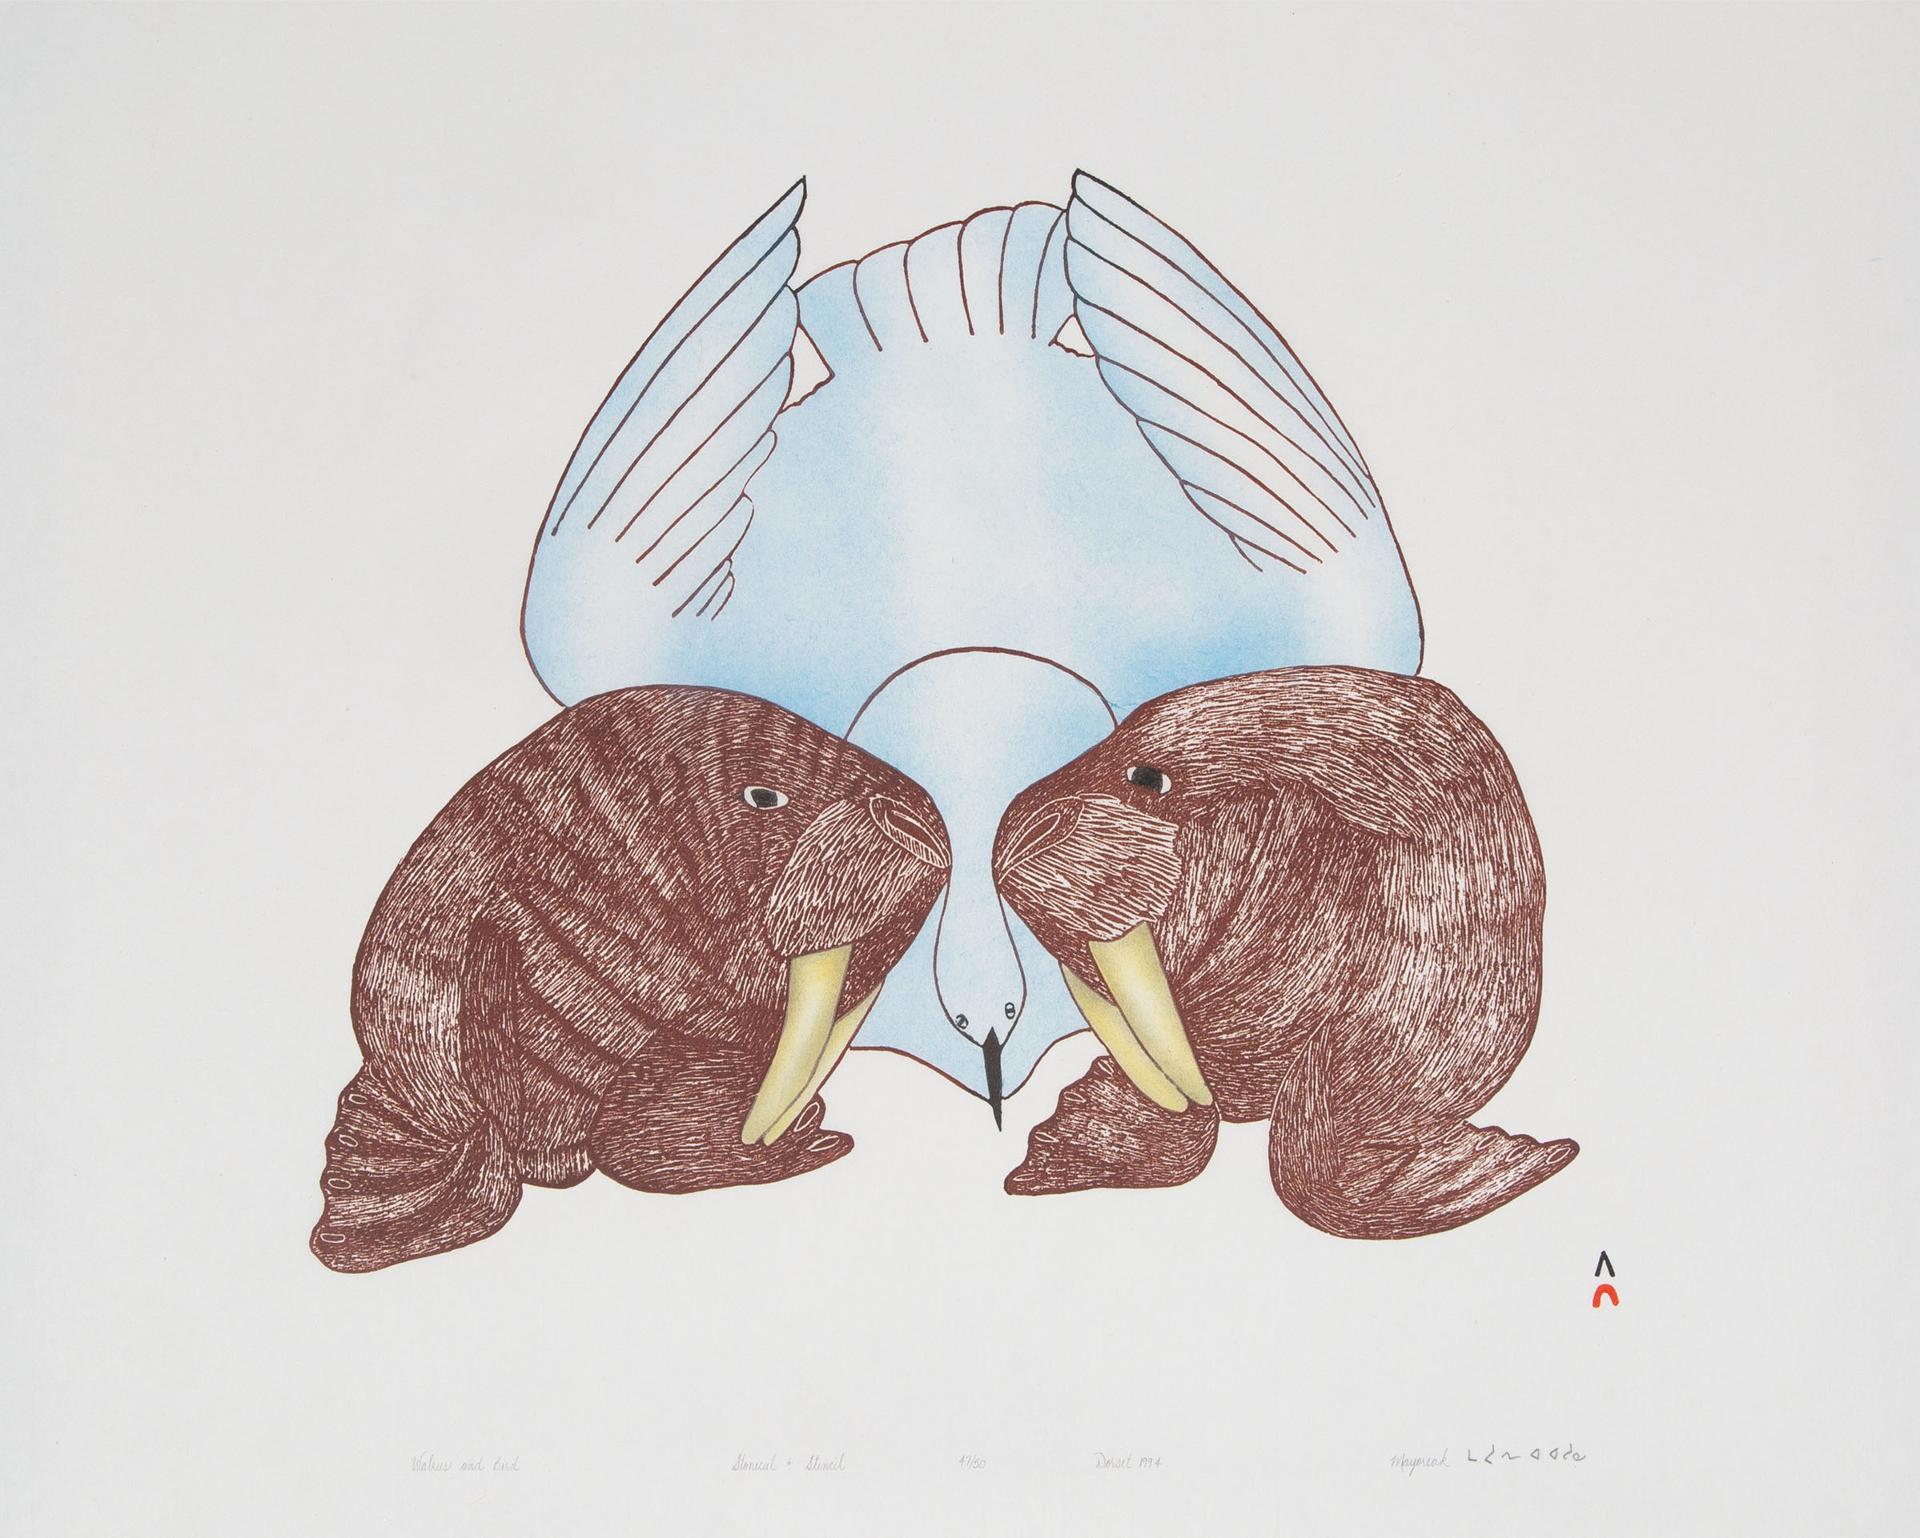 Mayureak Ashoona (1946) - Walrus And Bird, 1994